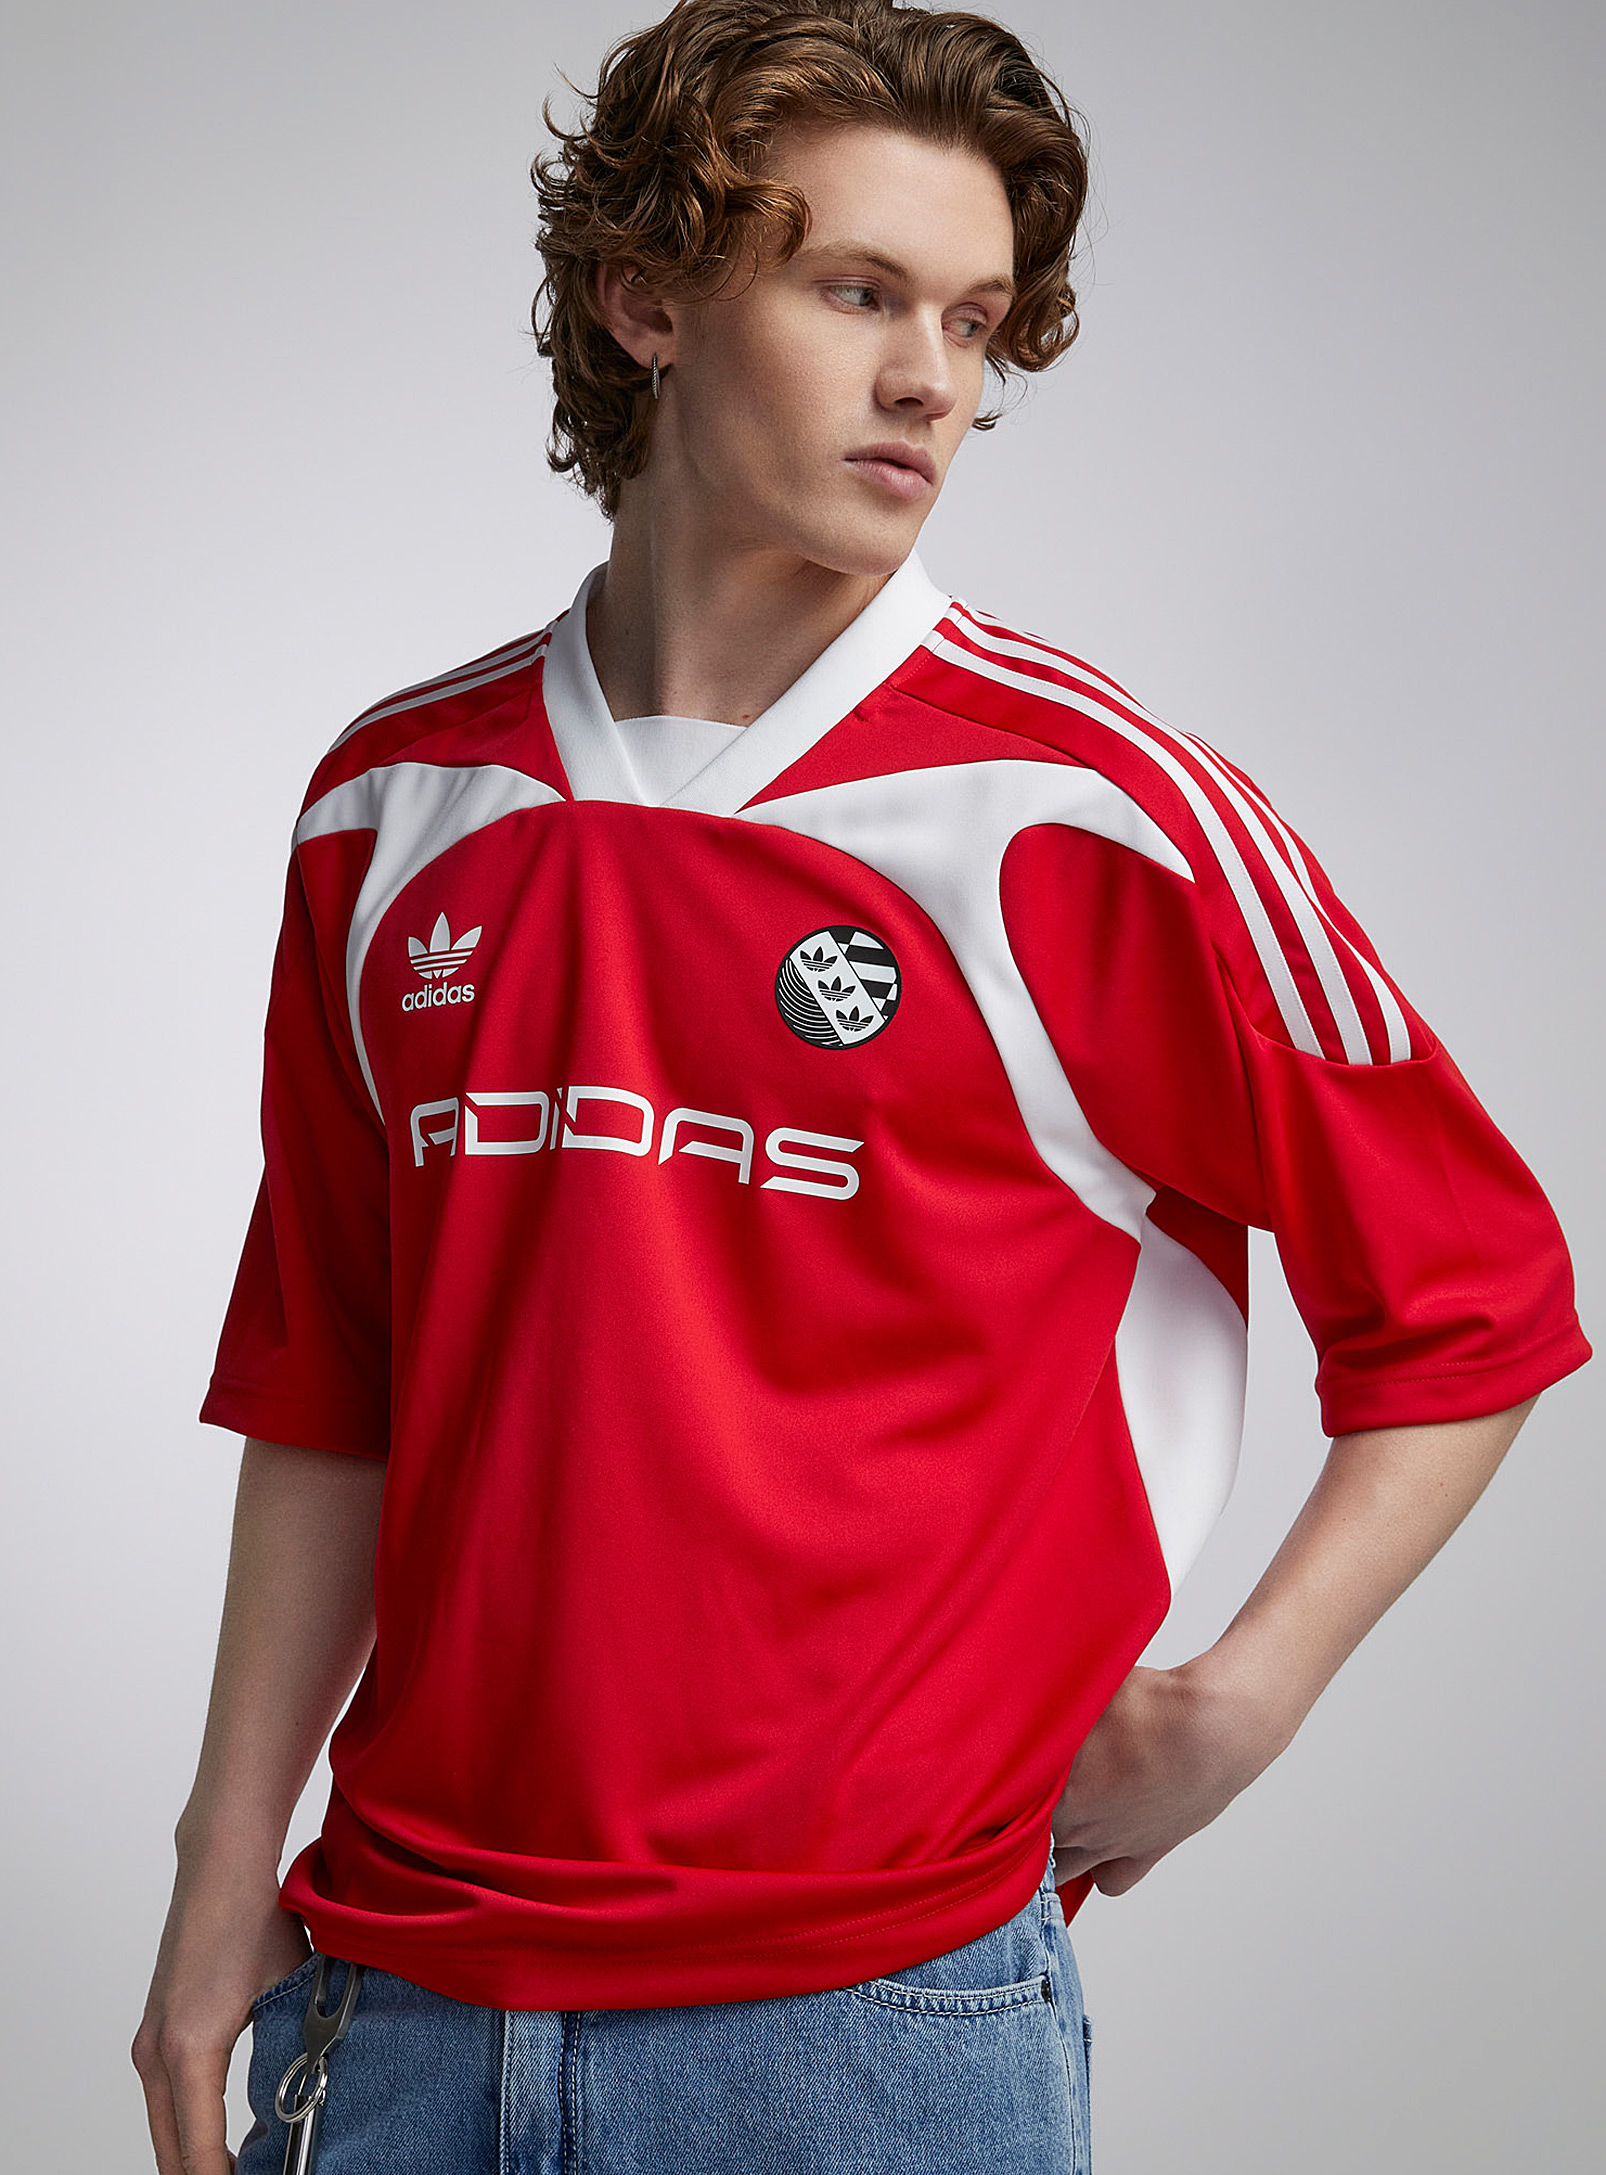 Adidas Originals Adilenium Soccer Jersey In Red